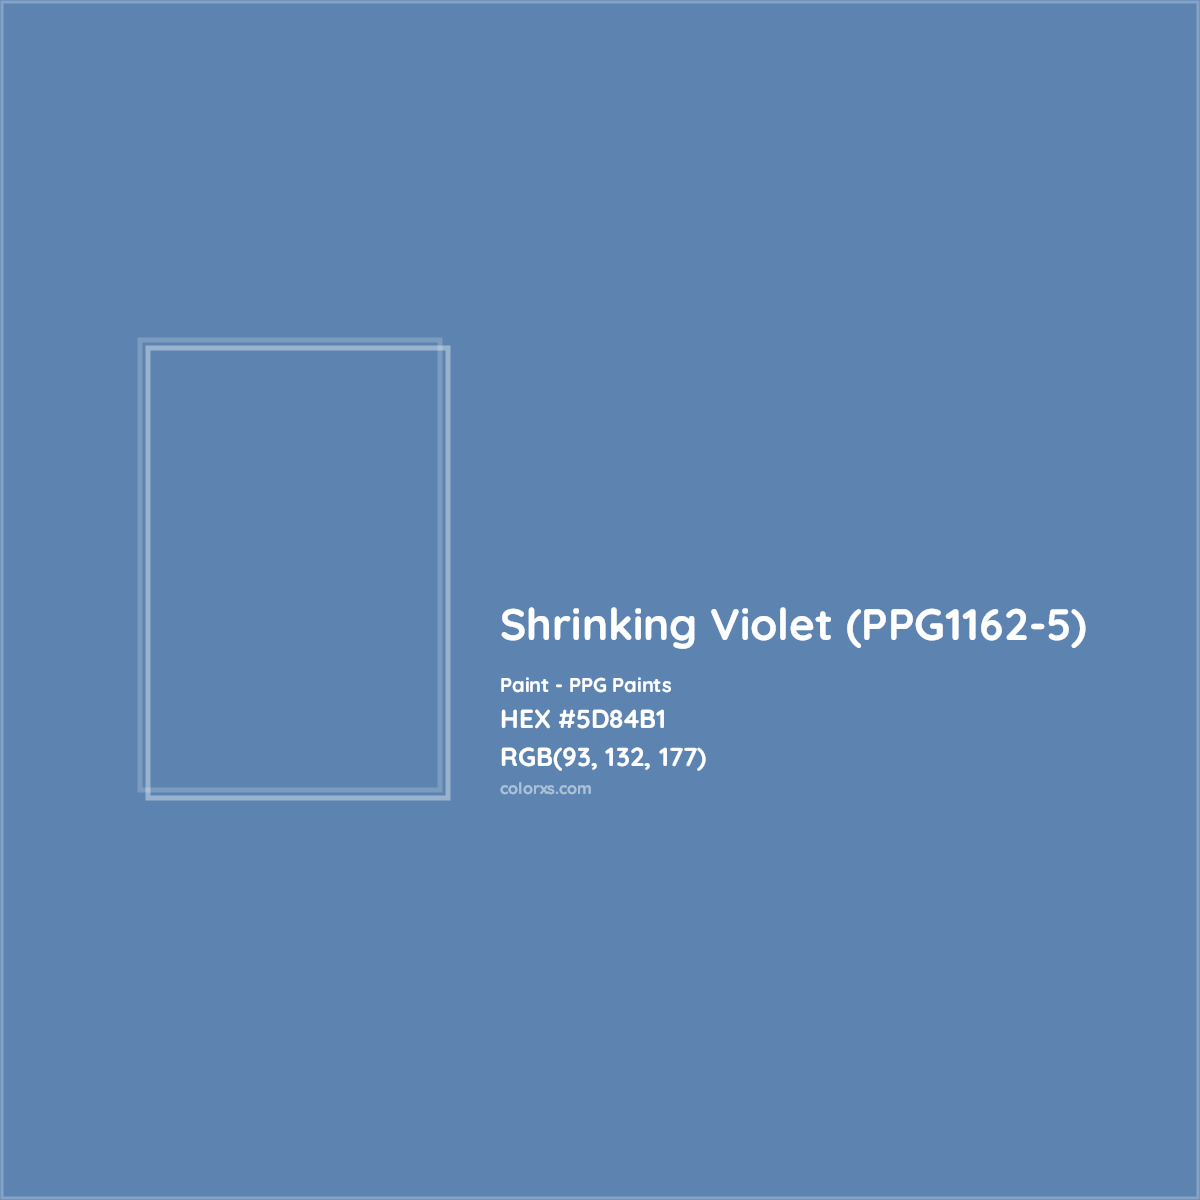 HEX #5D84B1 Shrinking Violet (PPG1162-5) Paint PPG Paints - Color Code